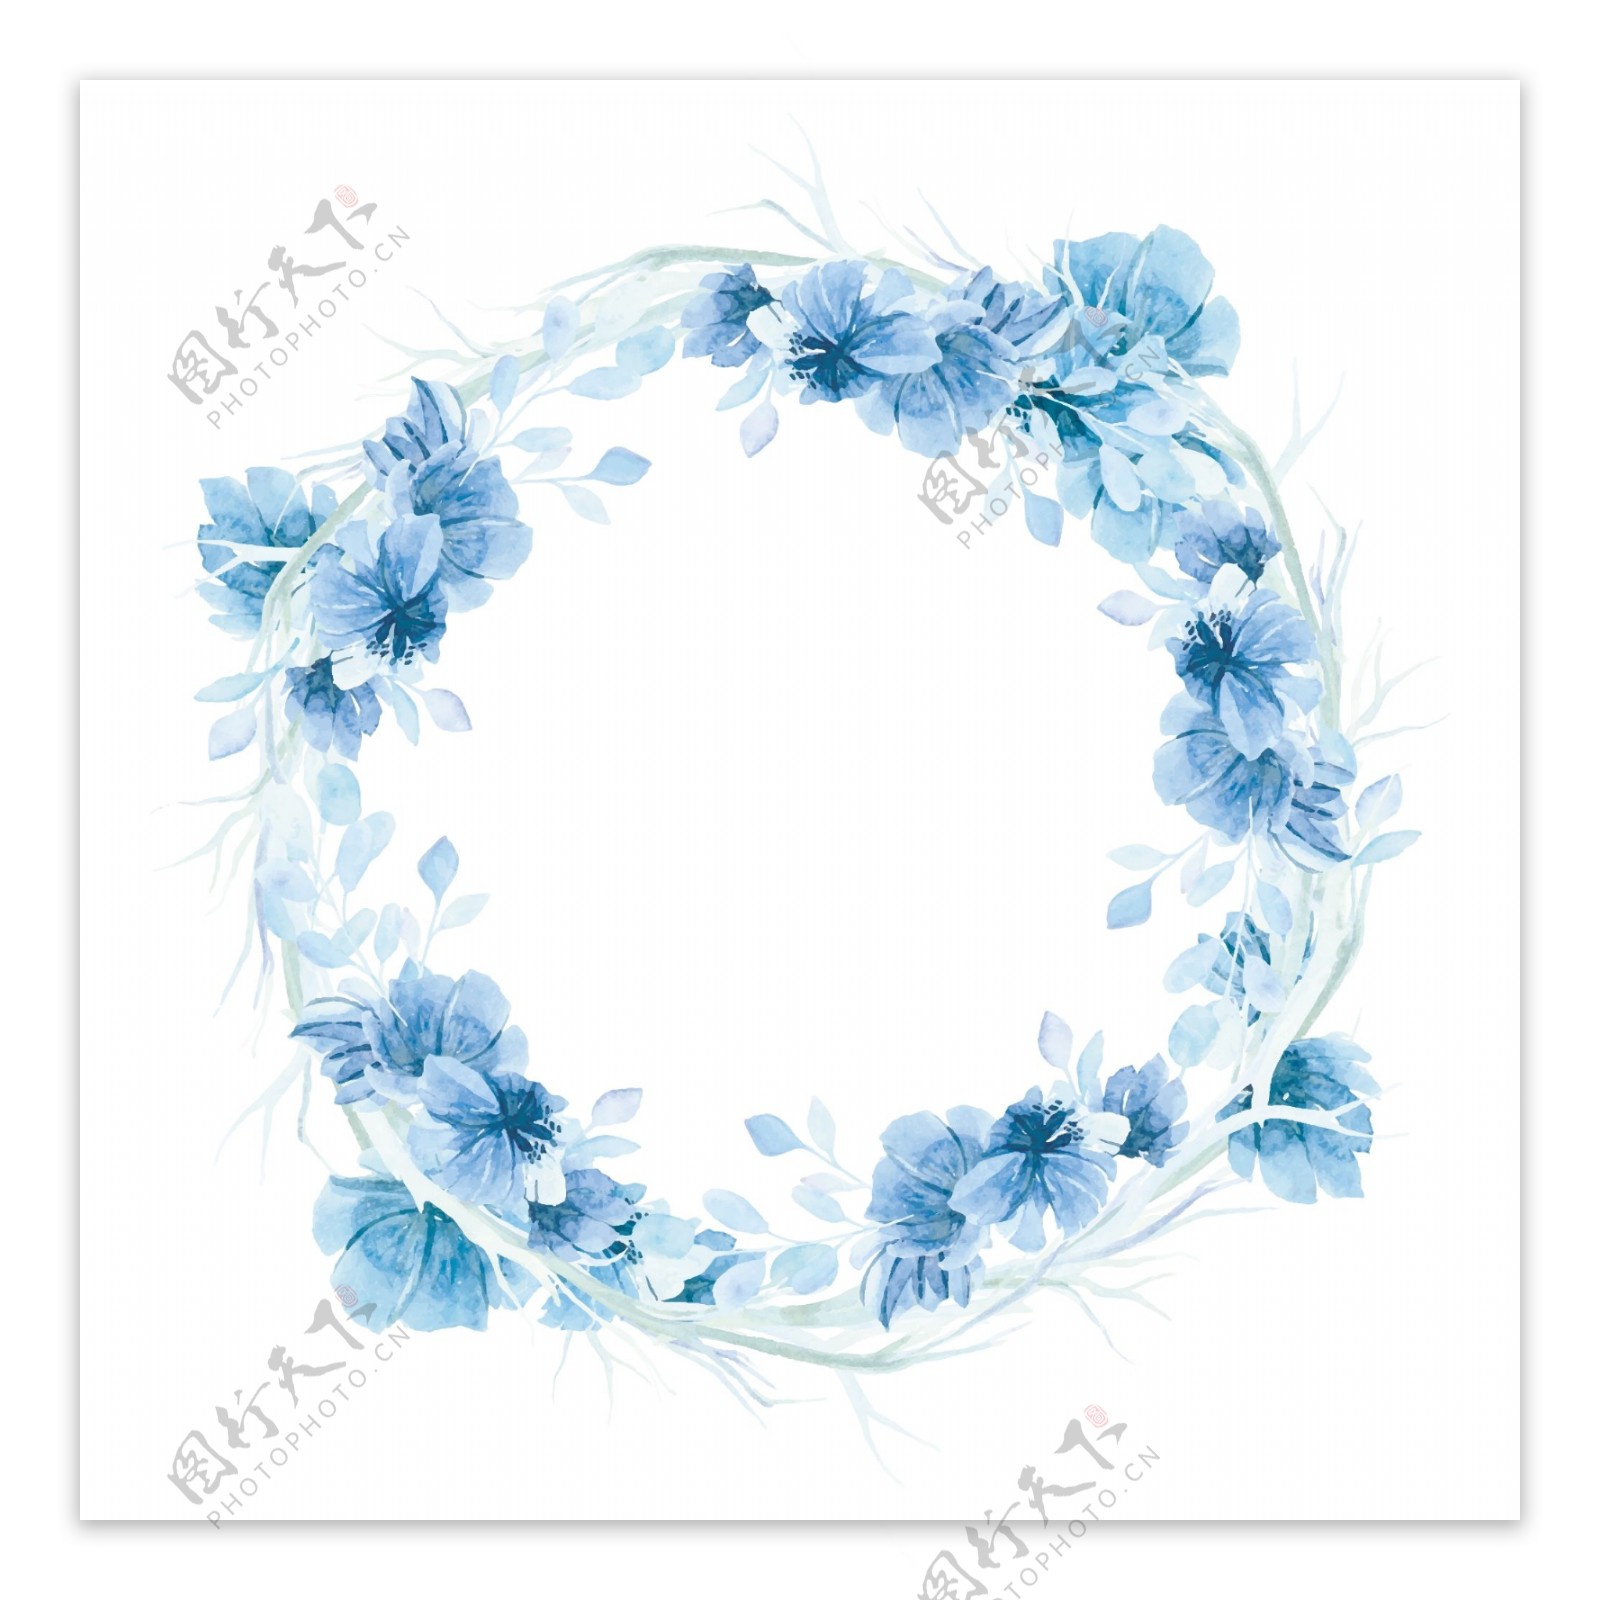 蓝色水彩花卉花环背景